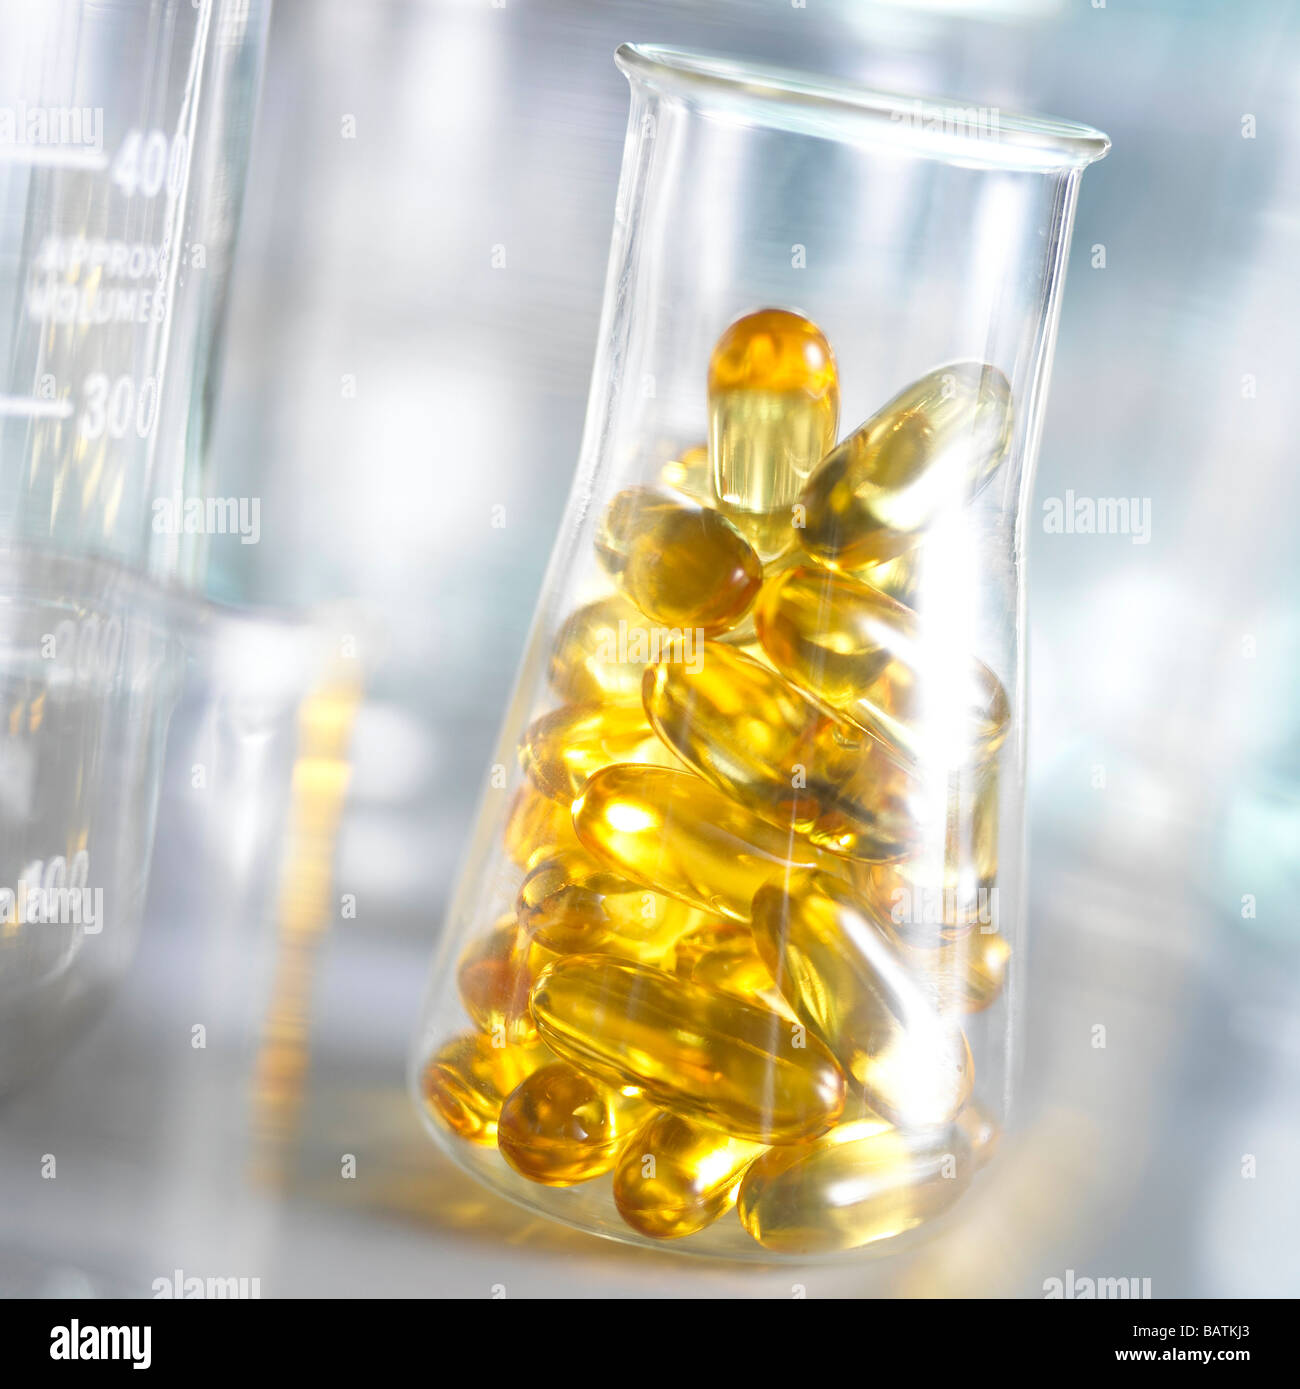 Integrare la ricerca. Olio di fegato di merluzzo capsule in una beuta conica. Questo potrebbe rappresentare la ricerca in alimentazione e nutrizione. Foto Stock